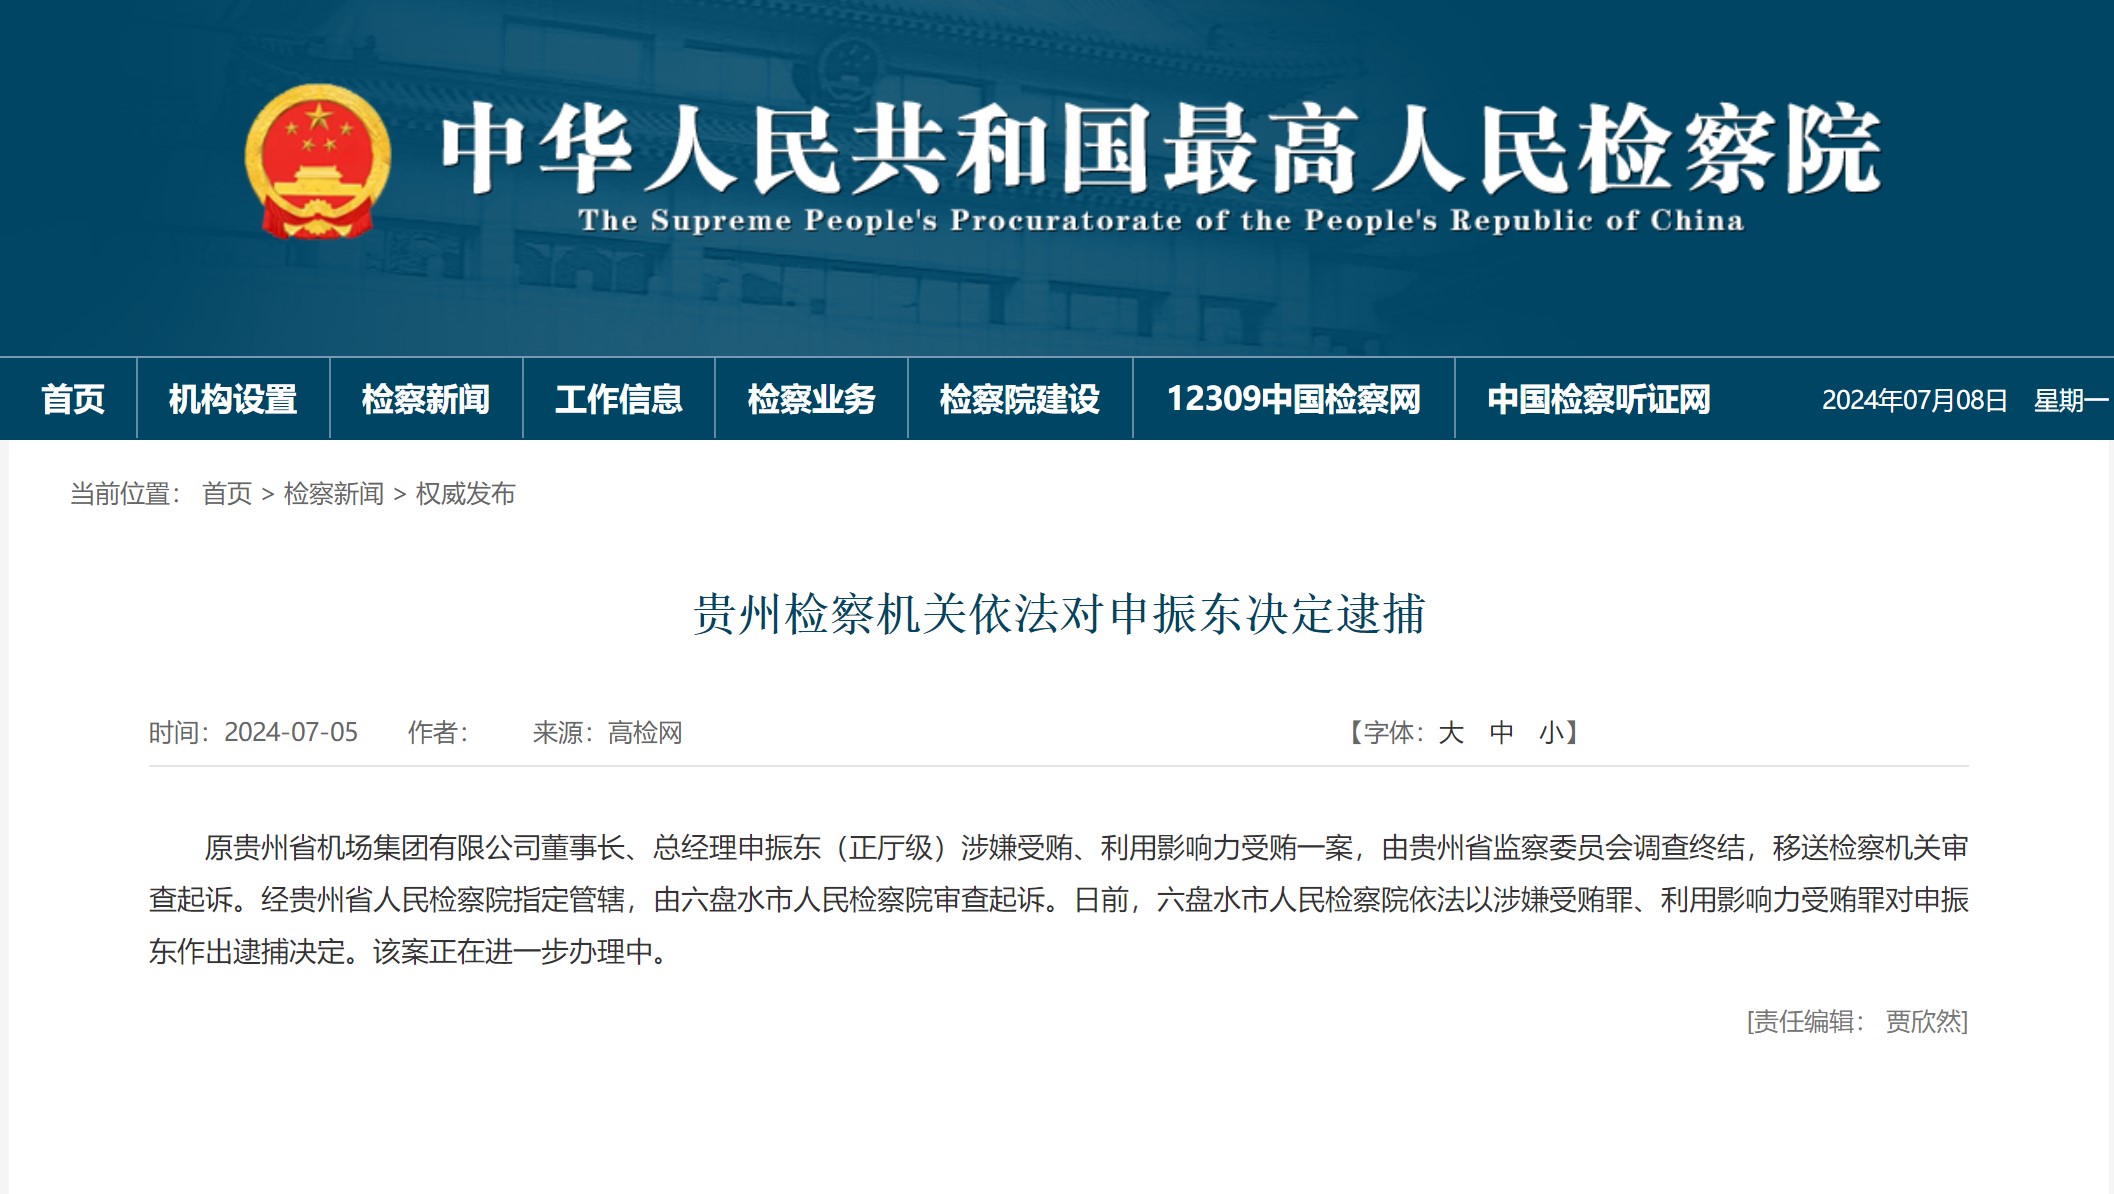 原贵州省机场集团有限公司董事长、总经理申振东被依法决定逮捕